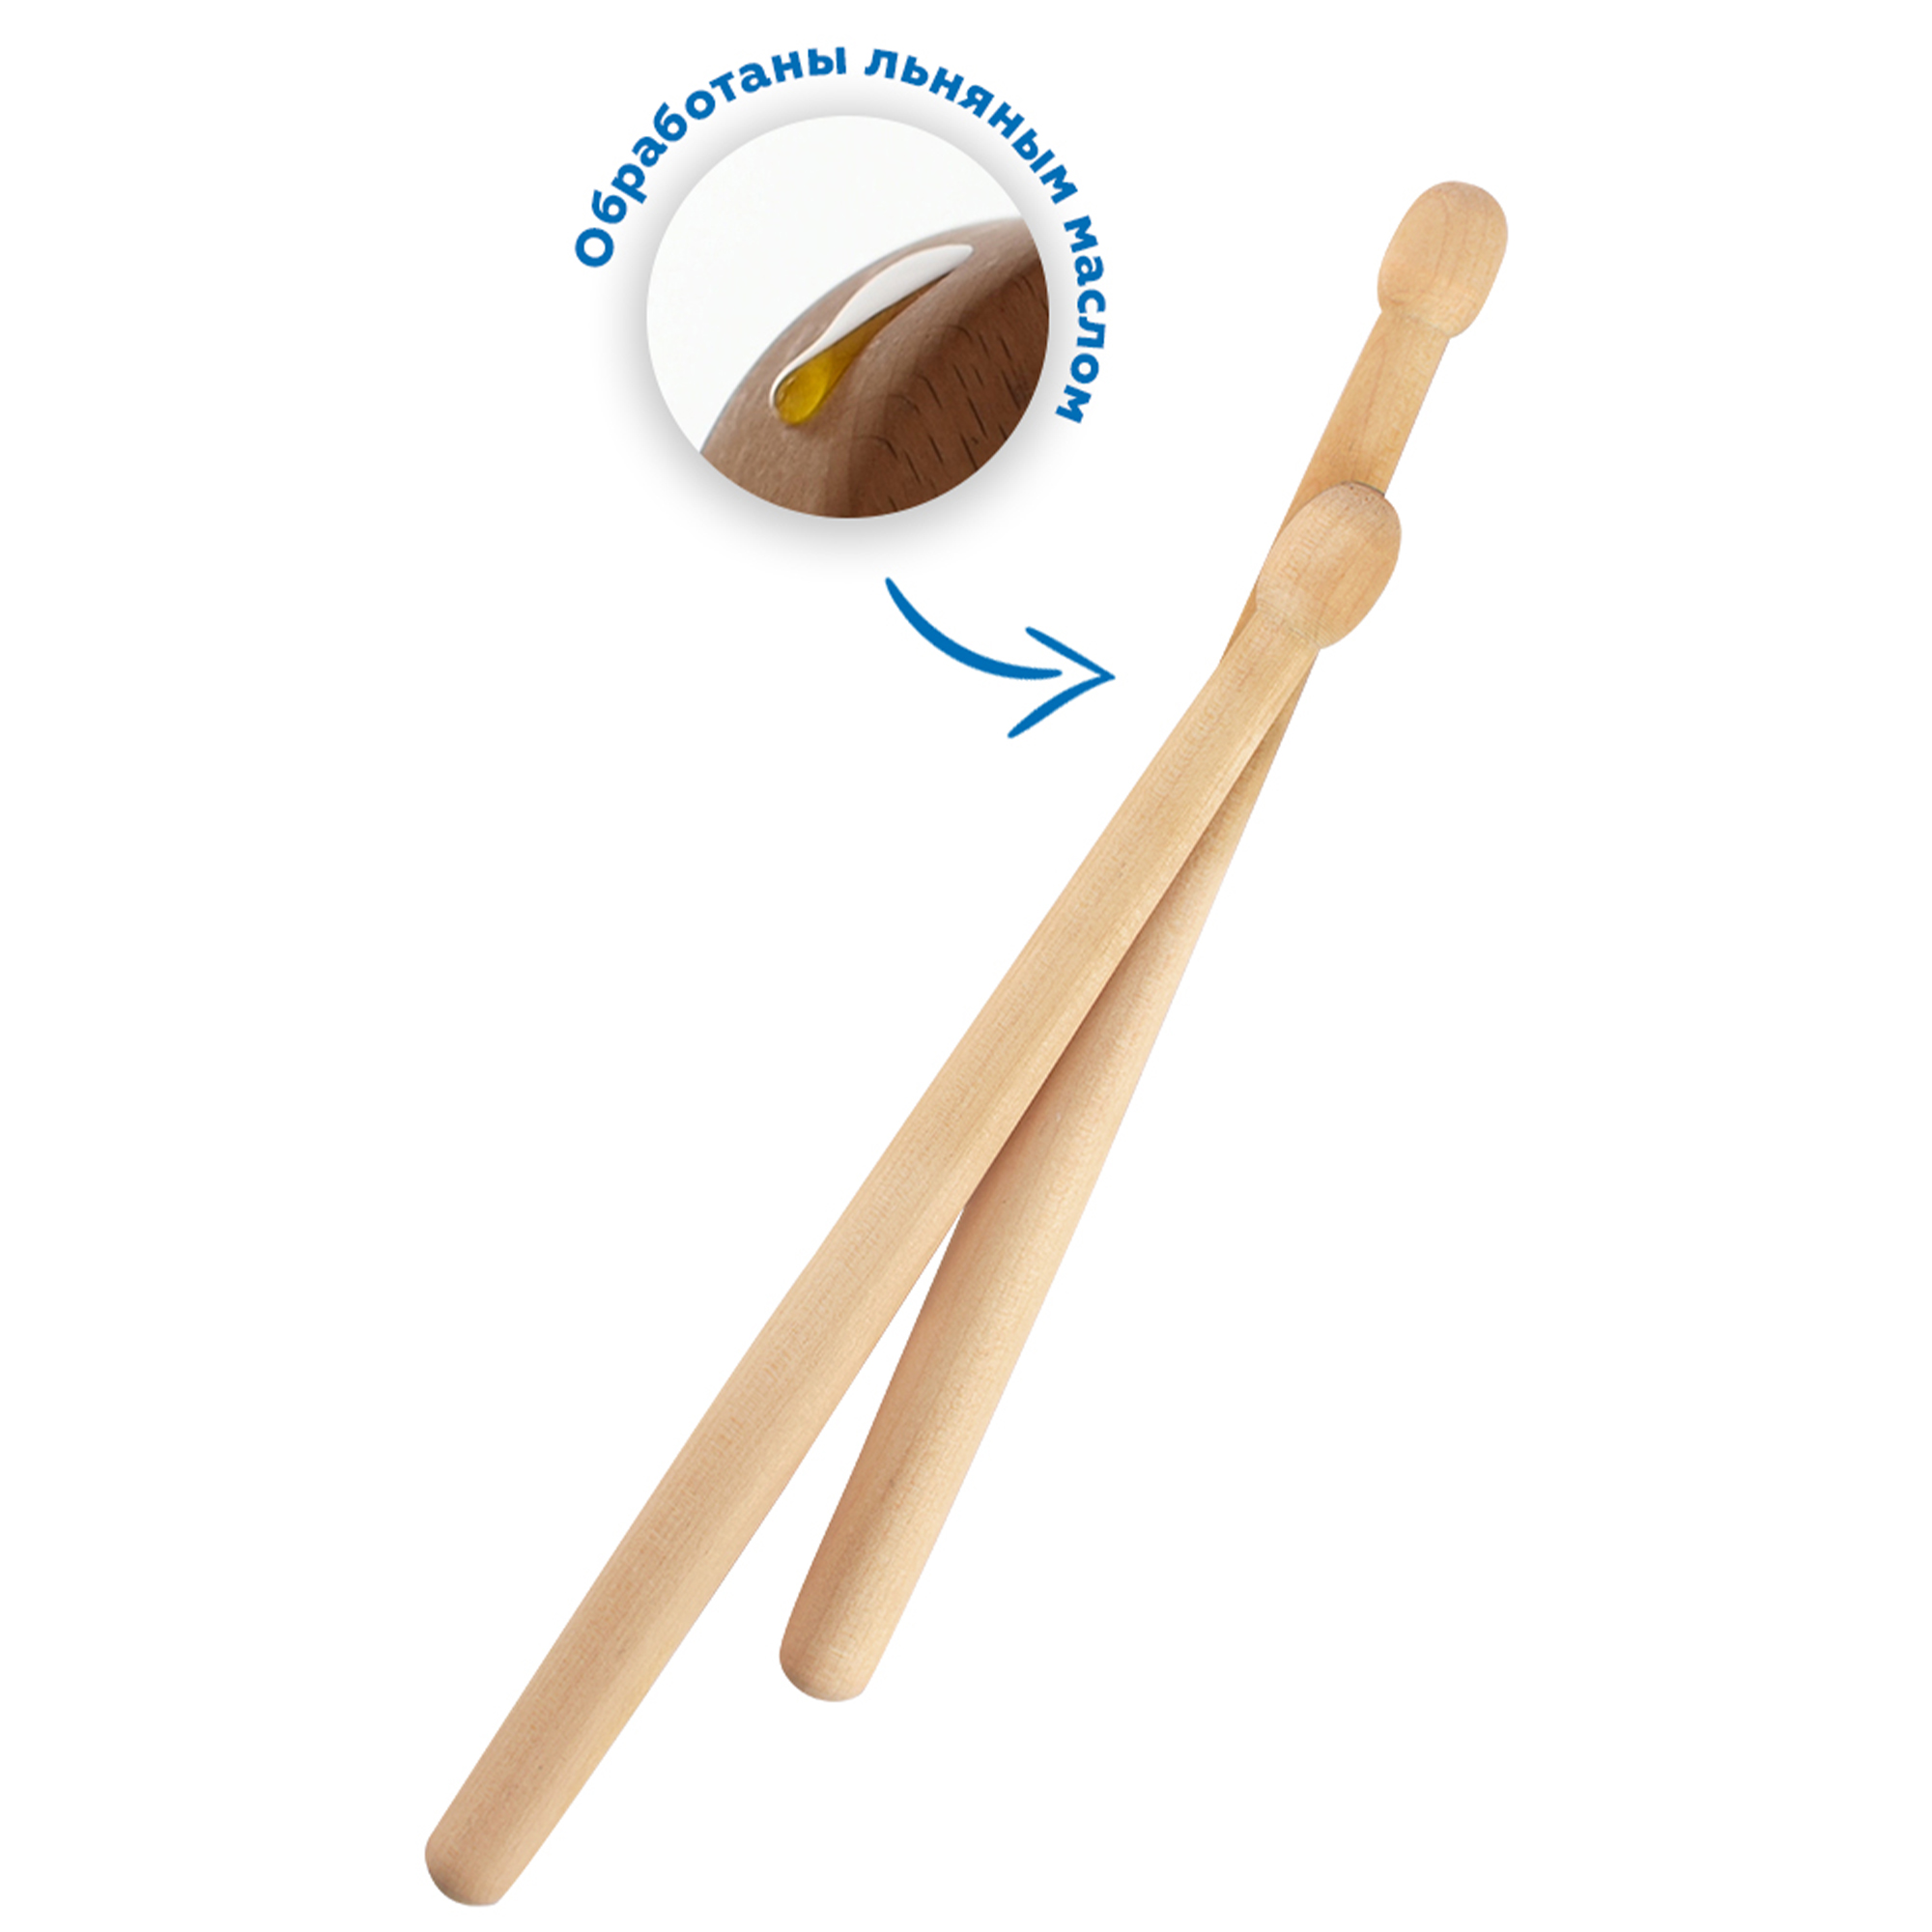 Музыкальный инструмент детский Мега Тойс деревянный барабан игрушка Music Style - фото 3